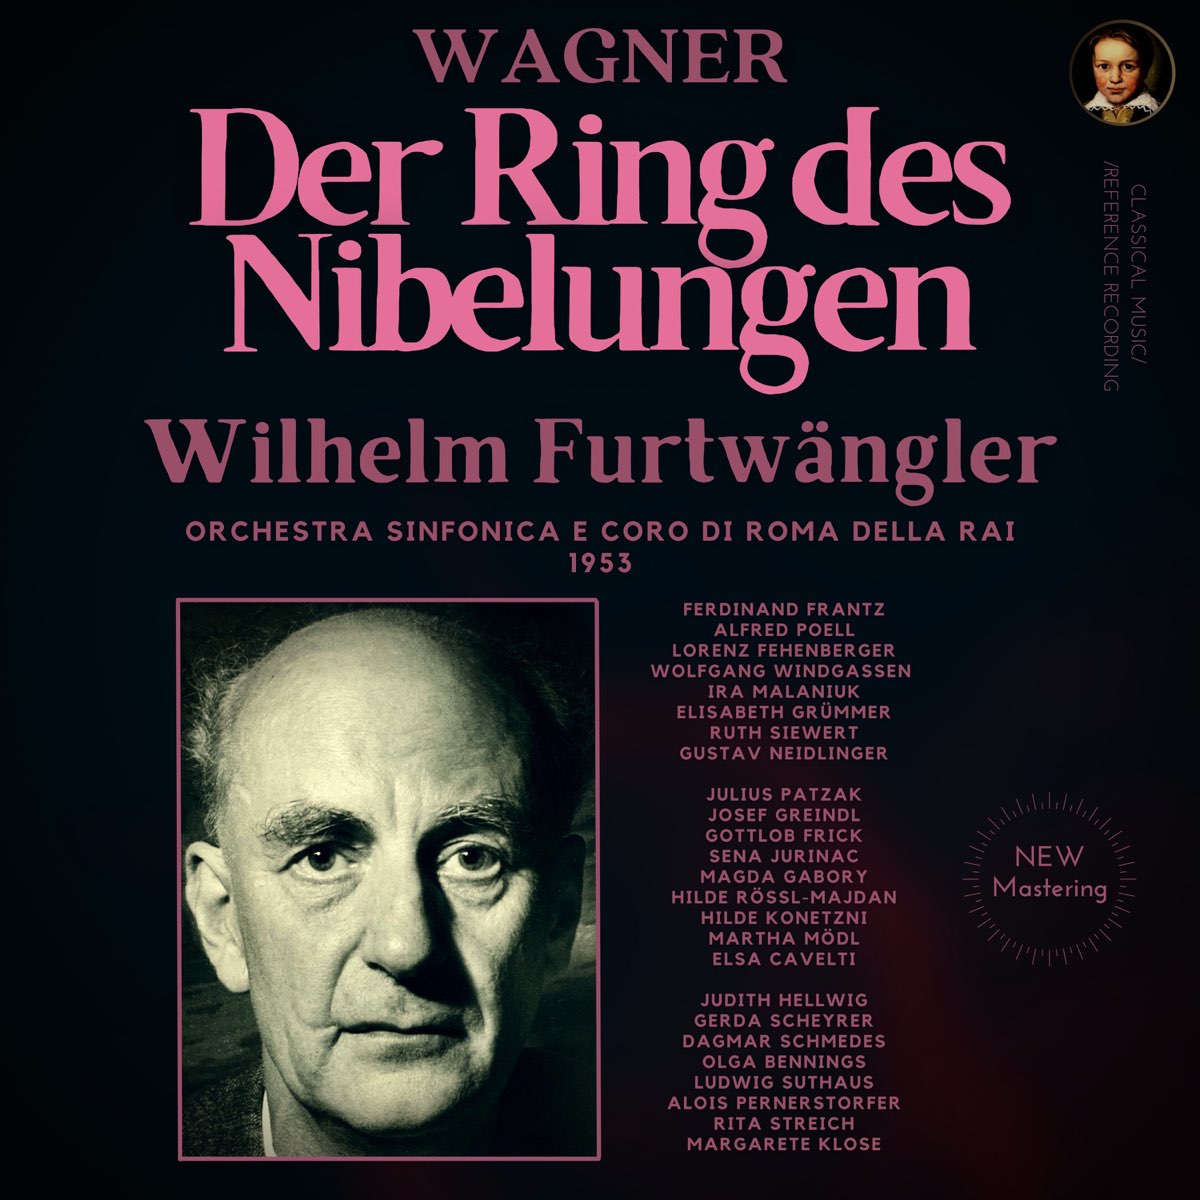 Wagner: Der Ring des Nibelungen by Wilhelm Furtwängler – Album von Wilhelm  Furtwängler – Apple Music